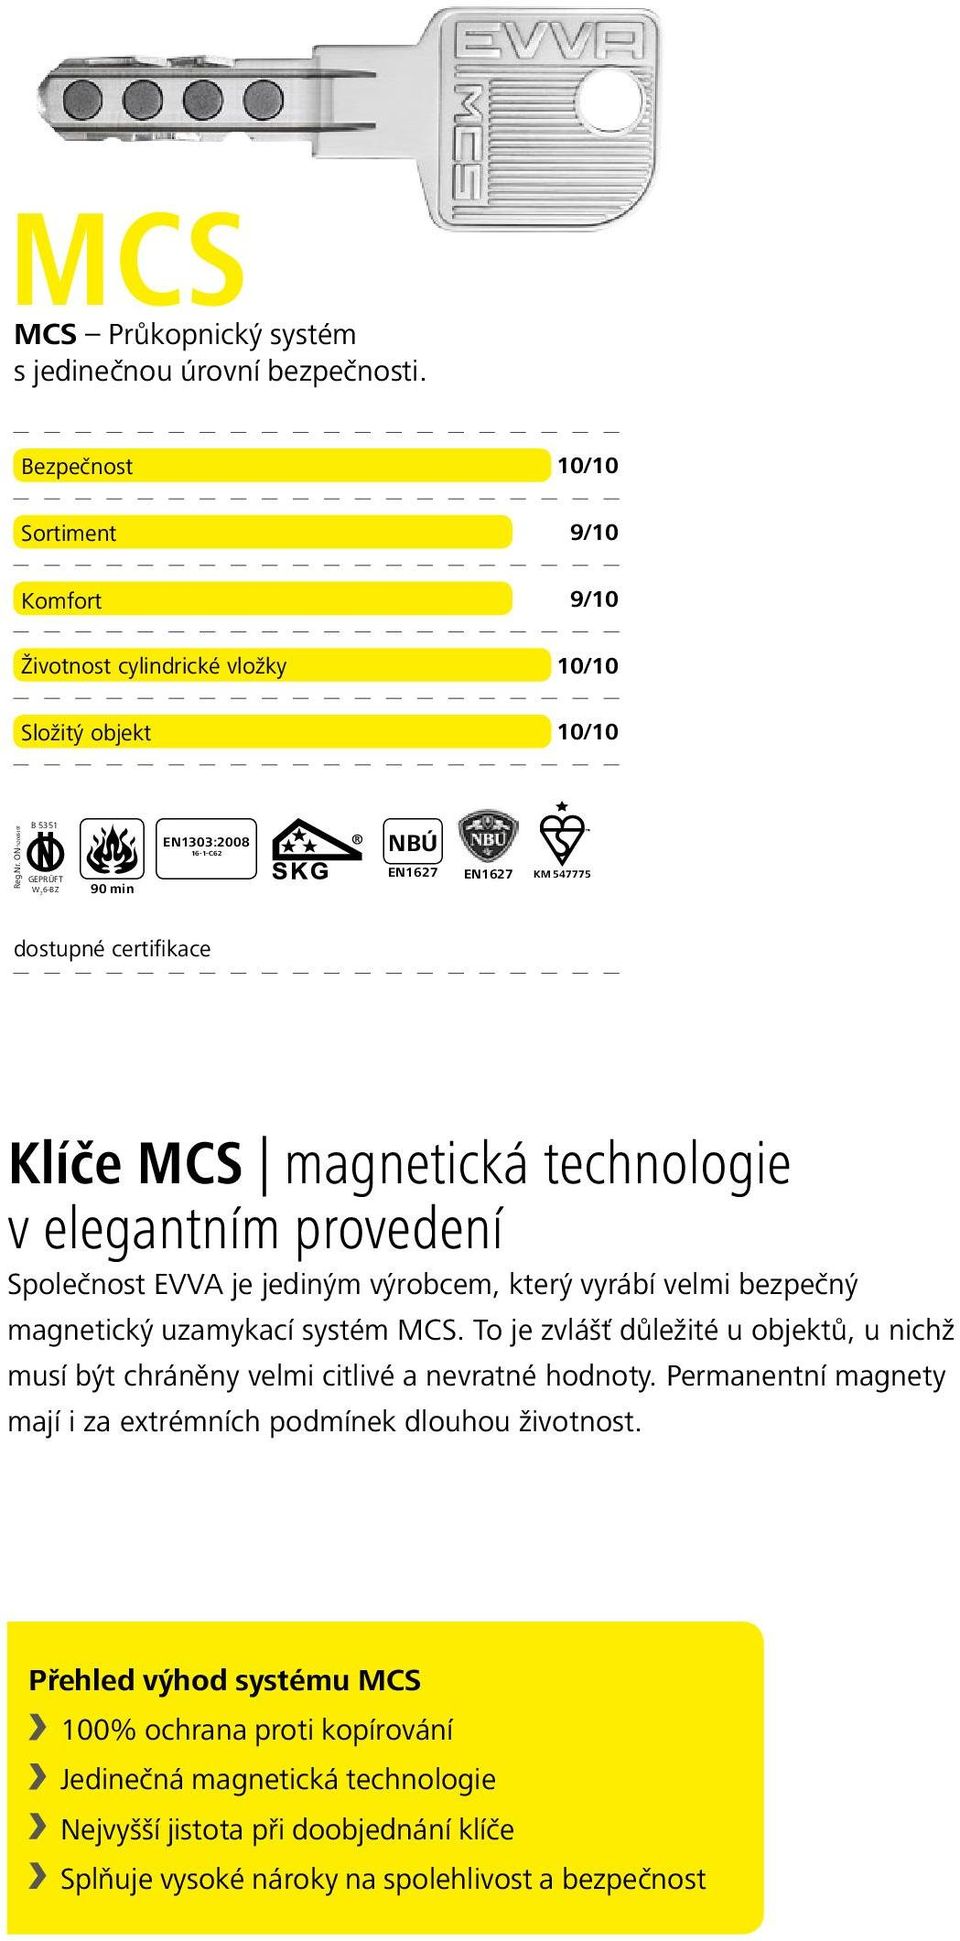 výrobcem, který vyrábí velmi bezpečný magnetický uzamykací systém MCS. To je zvlášť důležité u objektů, u nichž musí být chráněny velmi citlivé a nevratné hodnoty.